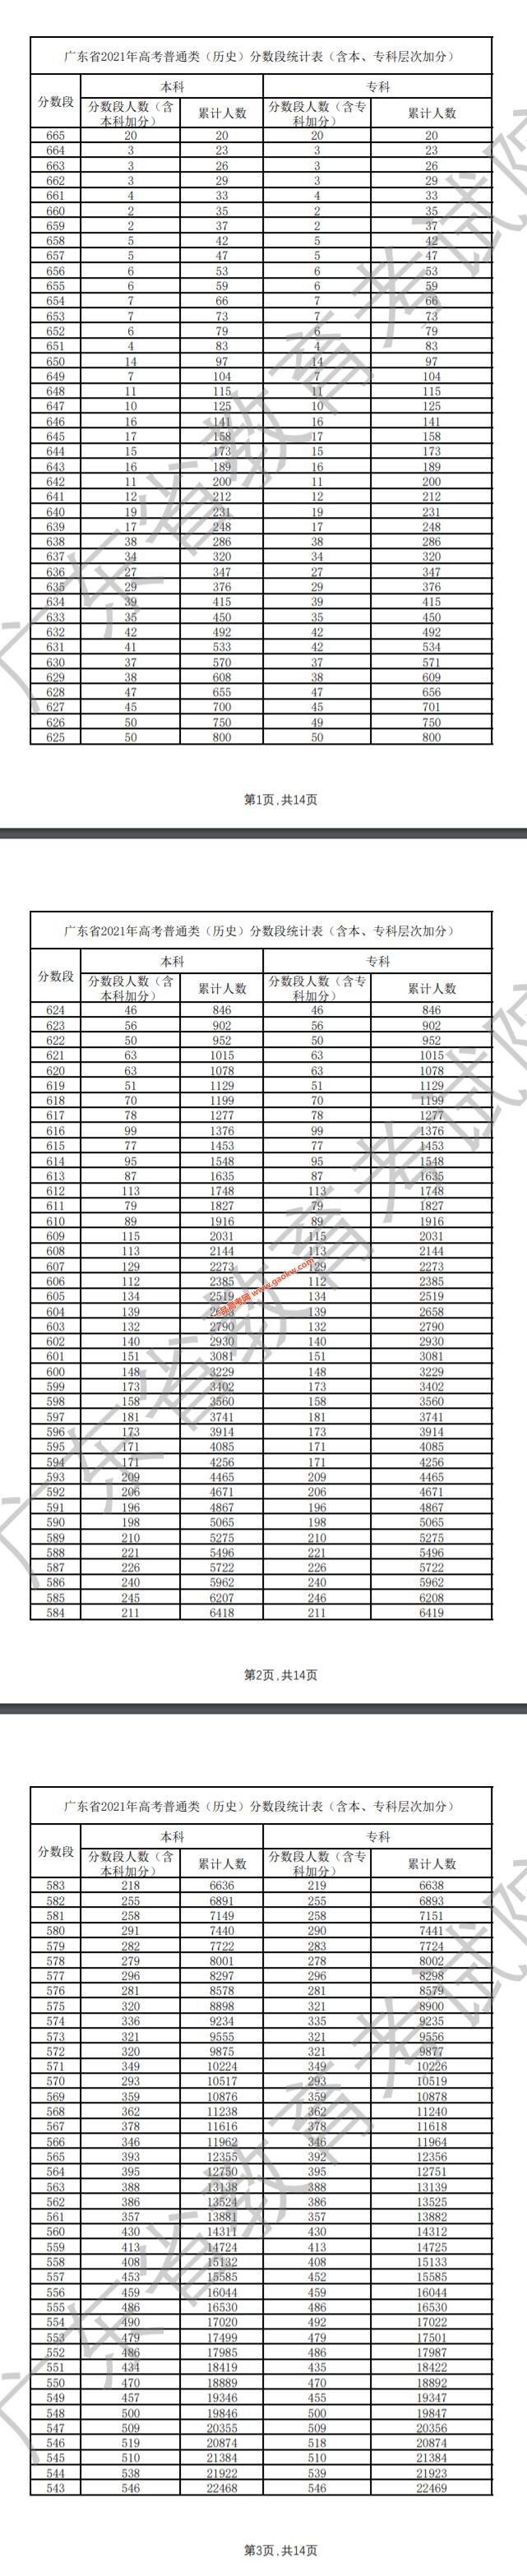 广东省2021年高考普通类（历史）成绩排名分数段统计表